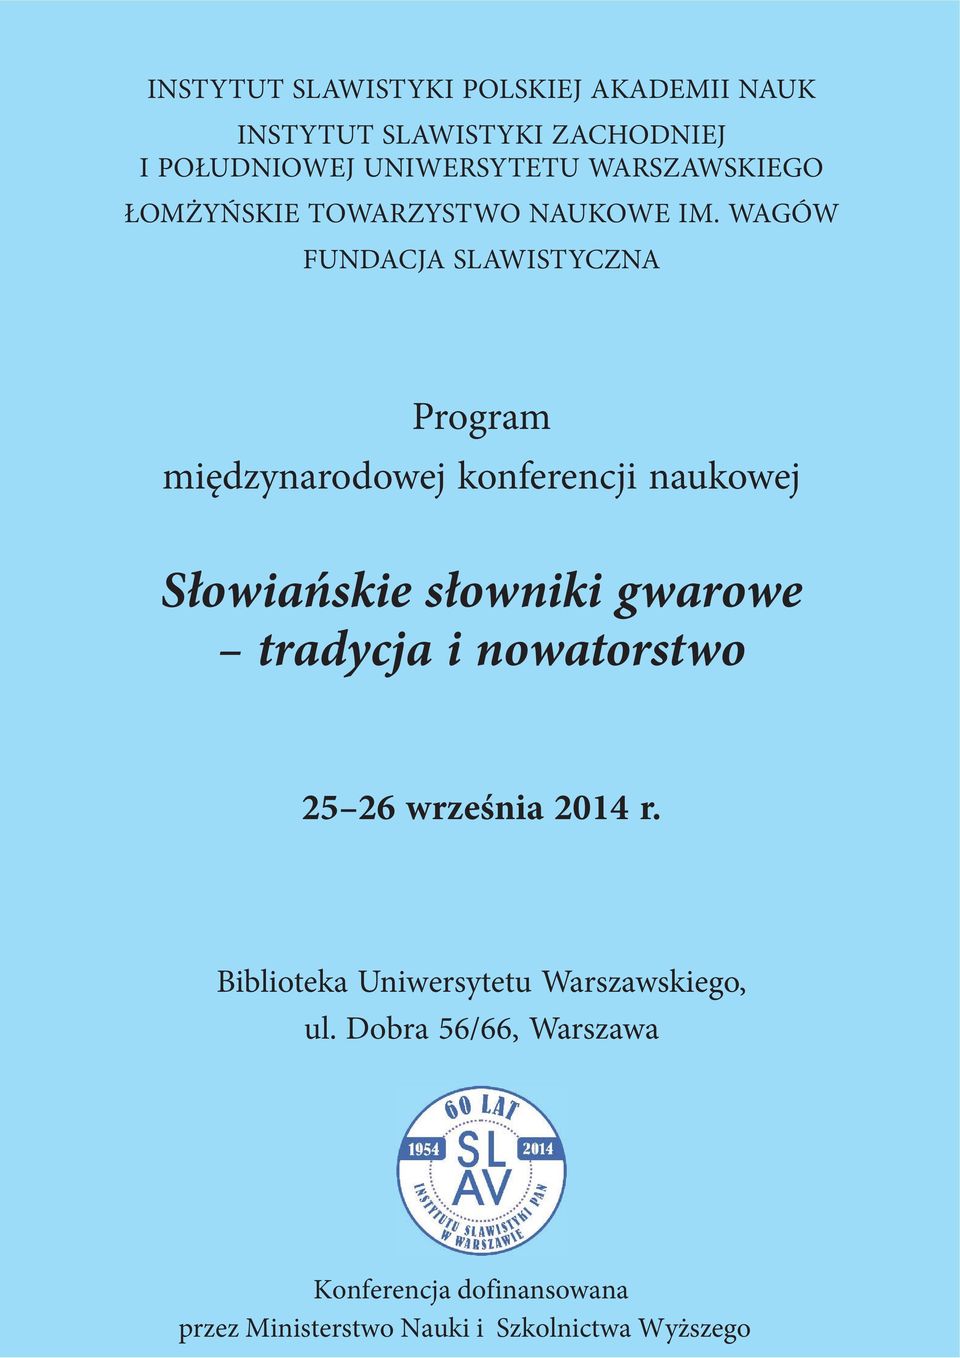 WAGÓW FUNDACJA SLAWISTYCZNA Program międzynarodowej konferencji naukowej Słowiańskie słowniki gwarowe